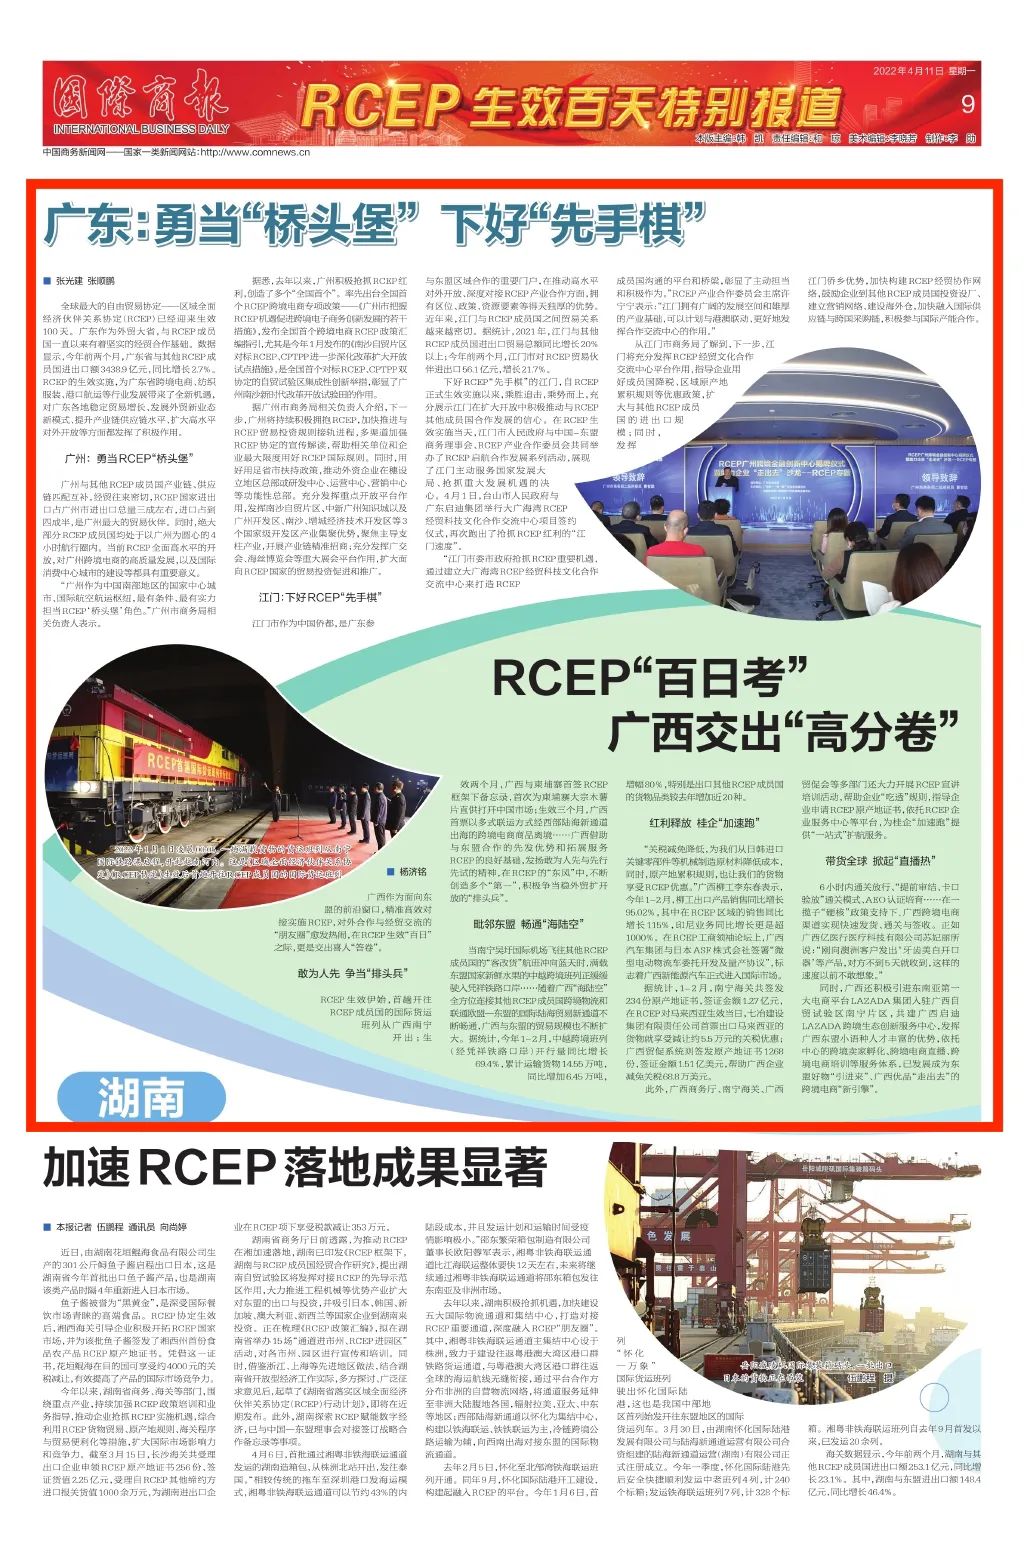 RCEP实施百天 国际商报特别报道 启迪助力广东广西交出“高分卷”